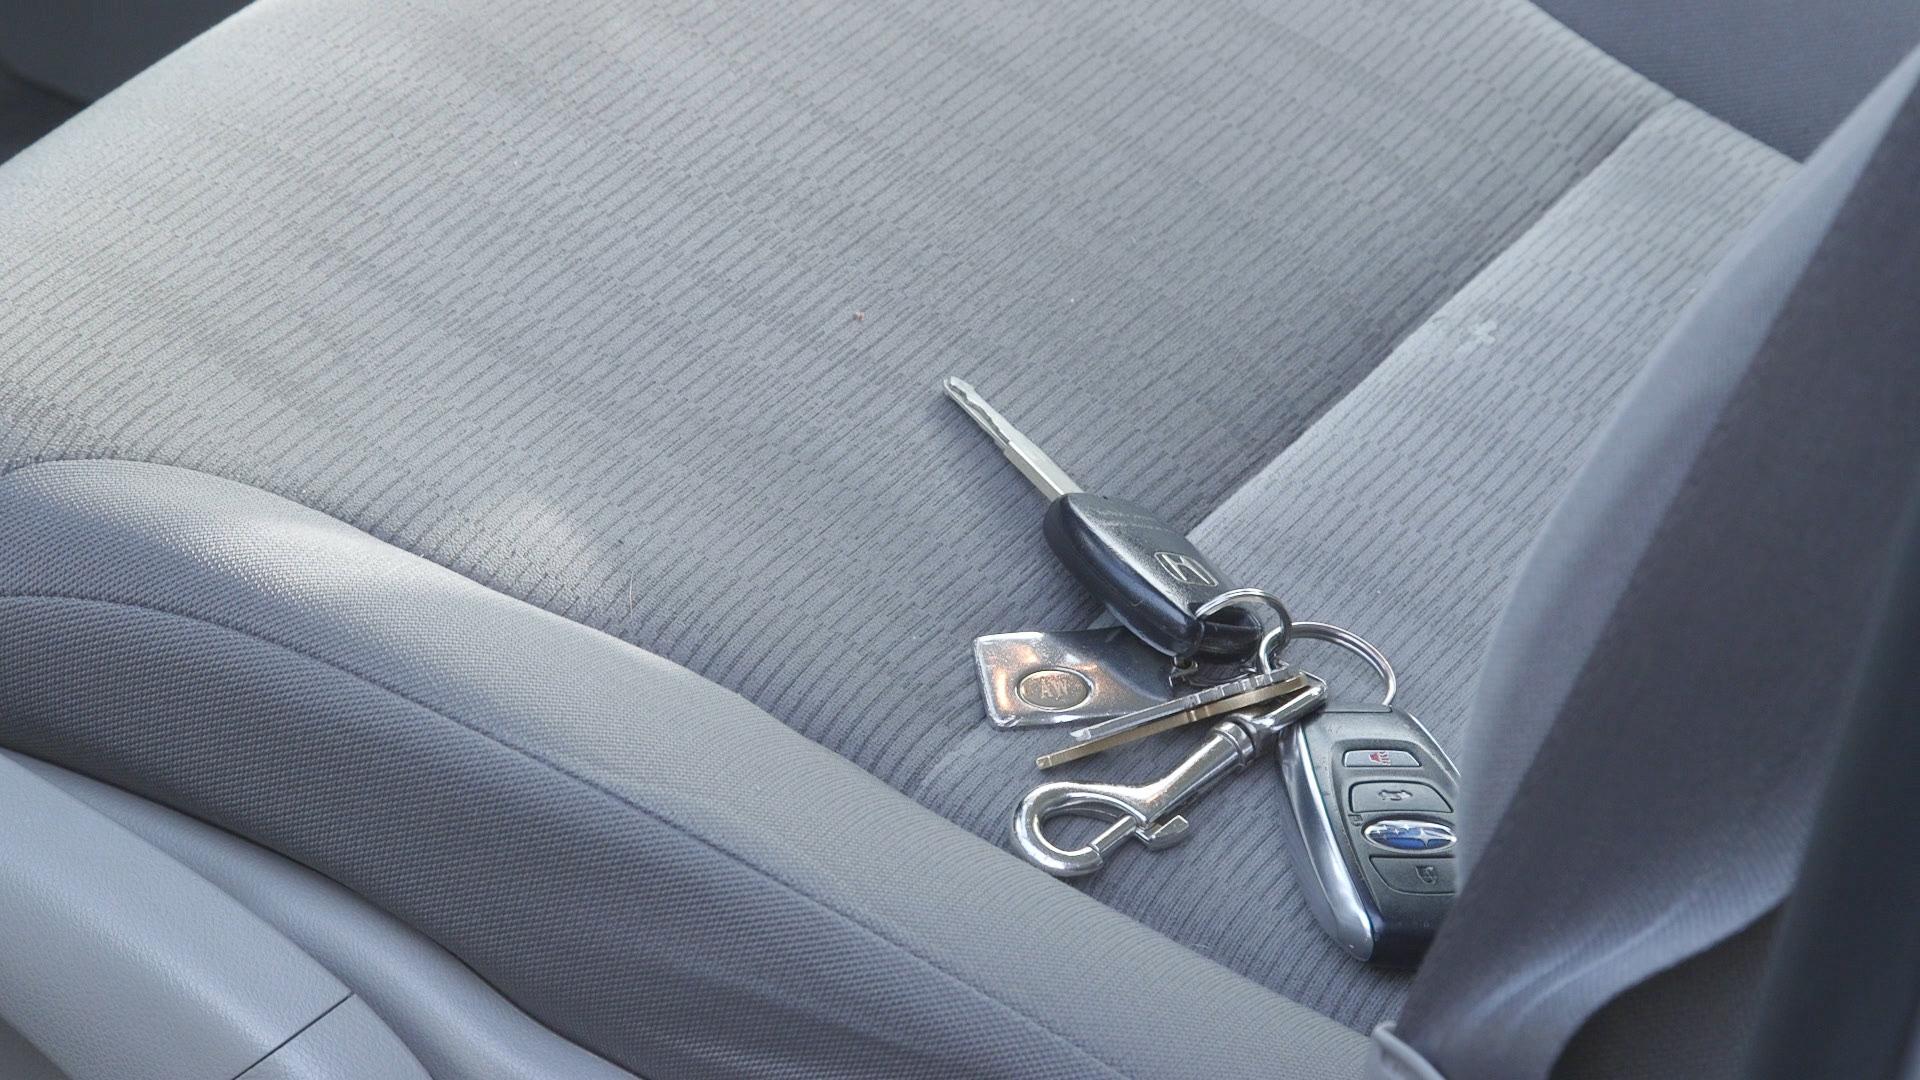 Keys on car seat